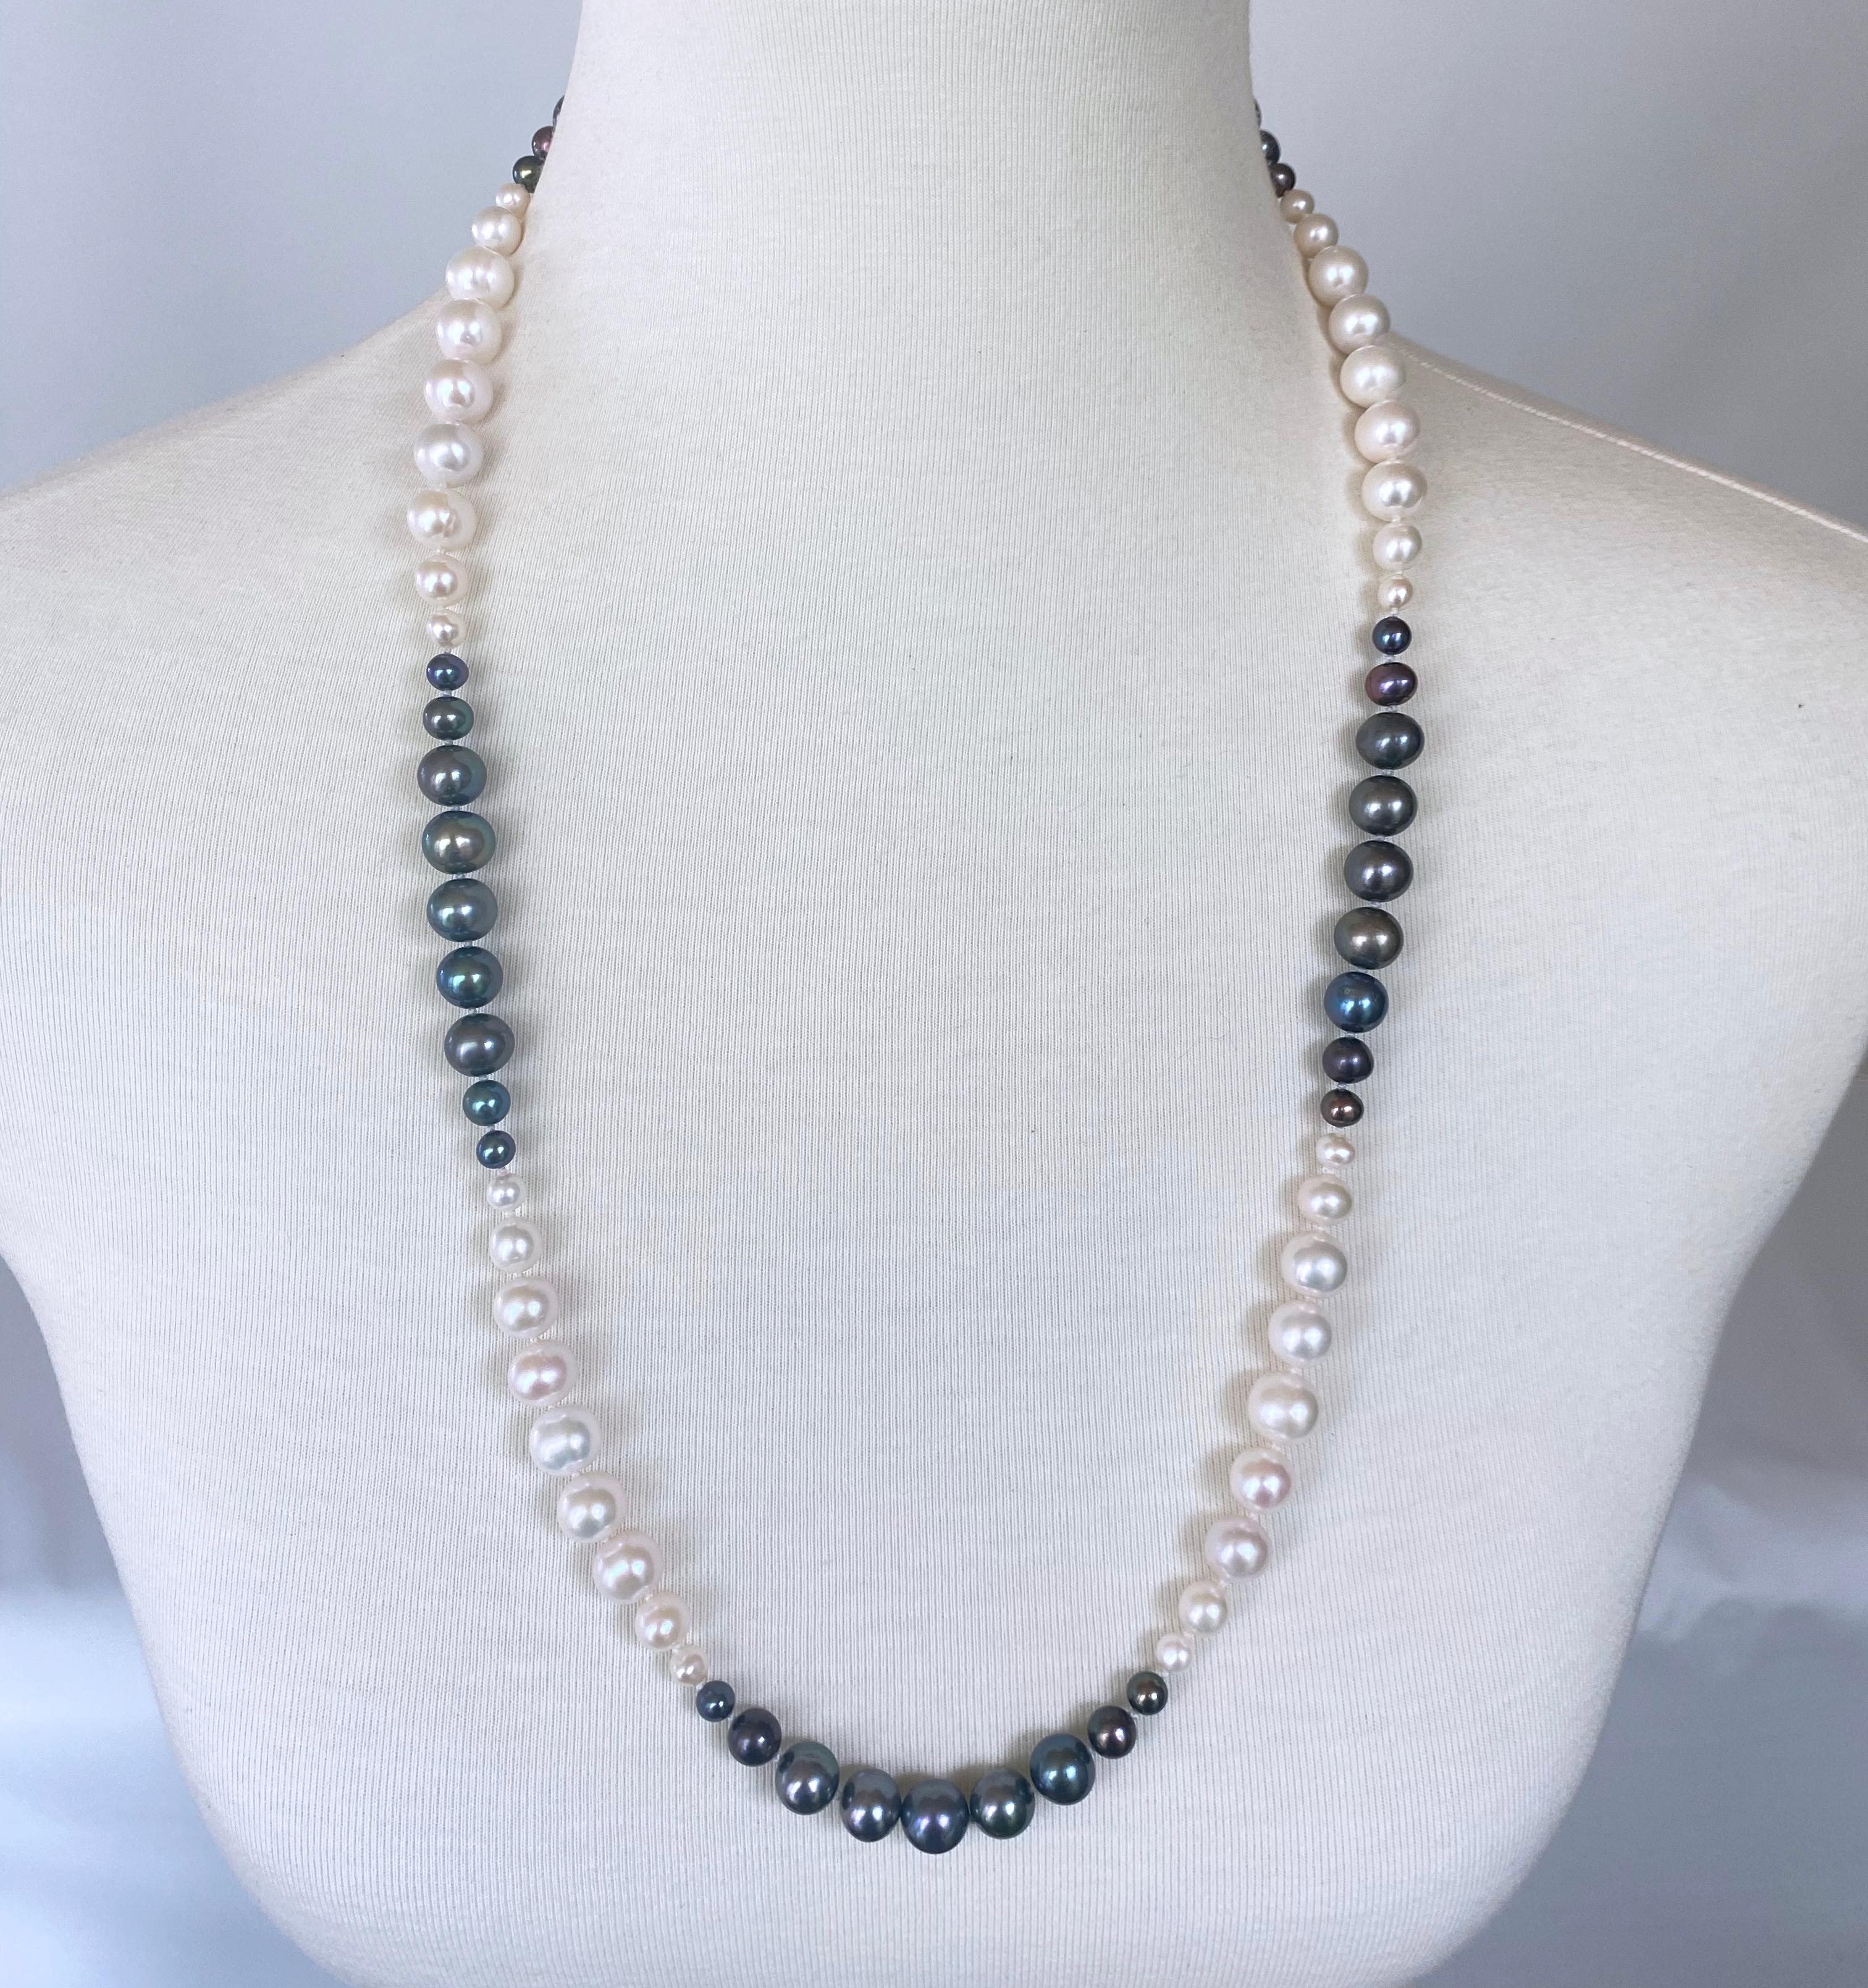 Magnifique collier de perles Ombre de Marina J. Ce magnifique collier est composé de perles de culture blanches et noires, toutes enfilées ensemble avec des graduations de tailles multiples. Les perles présentent un merveilleux lustre et toutes les